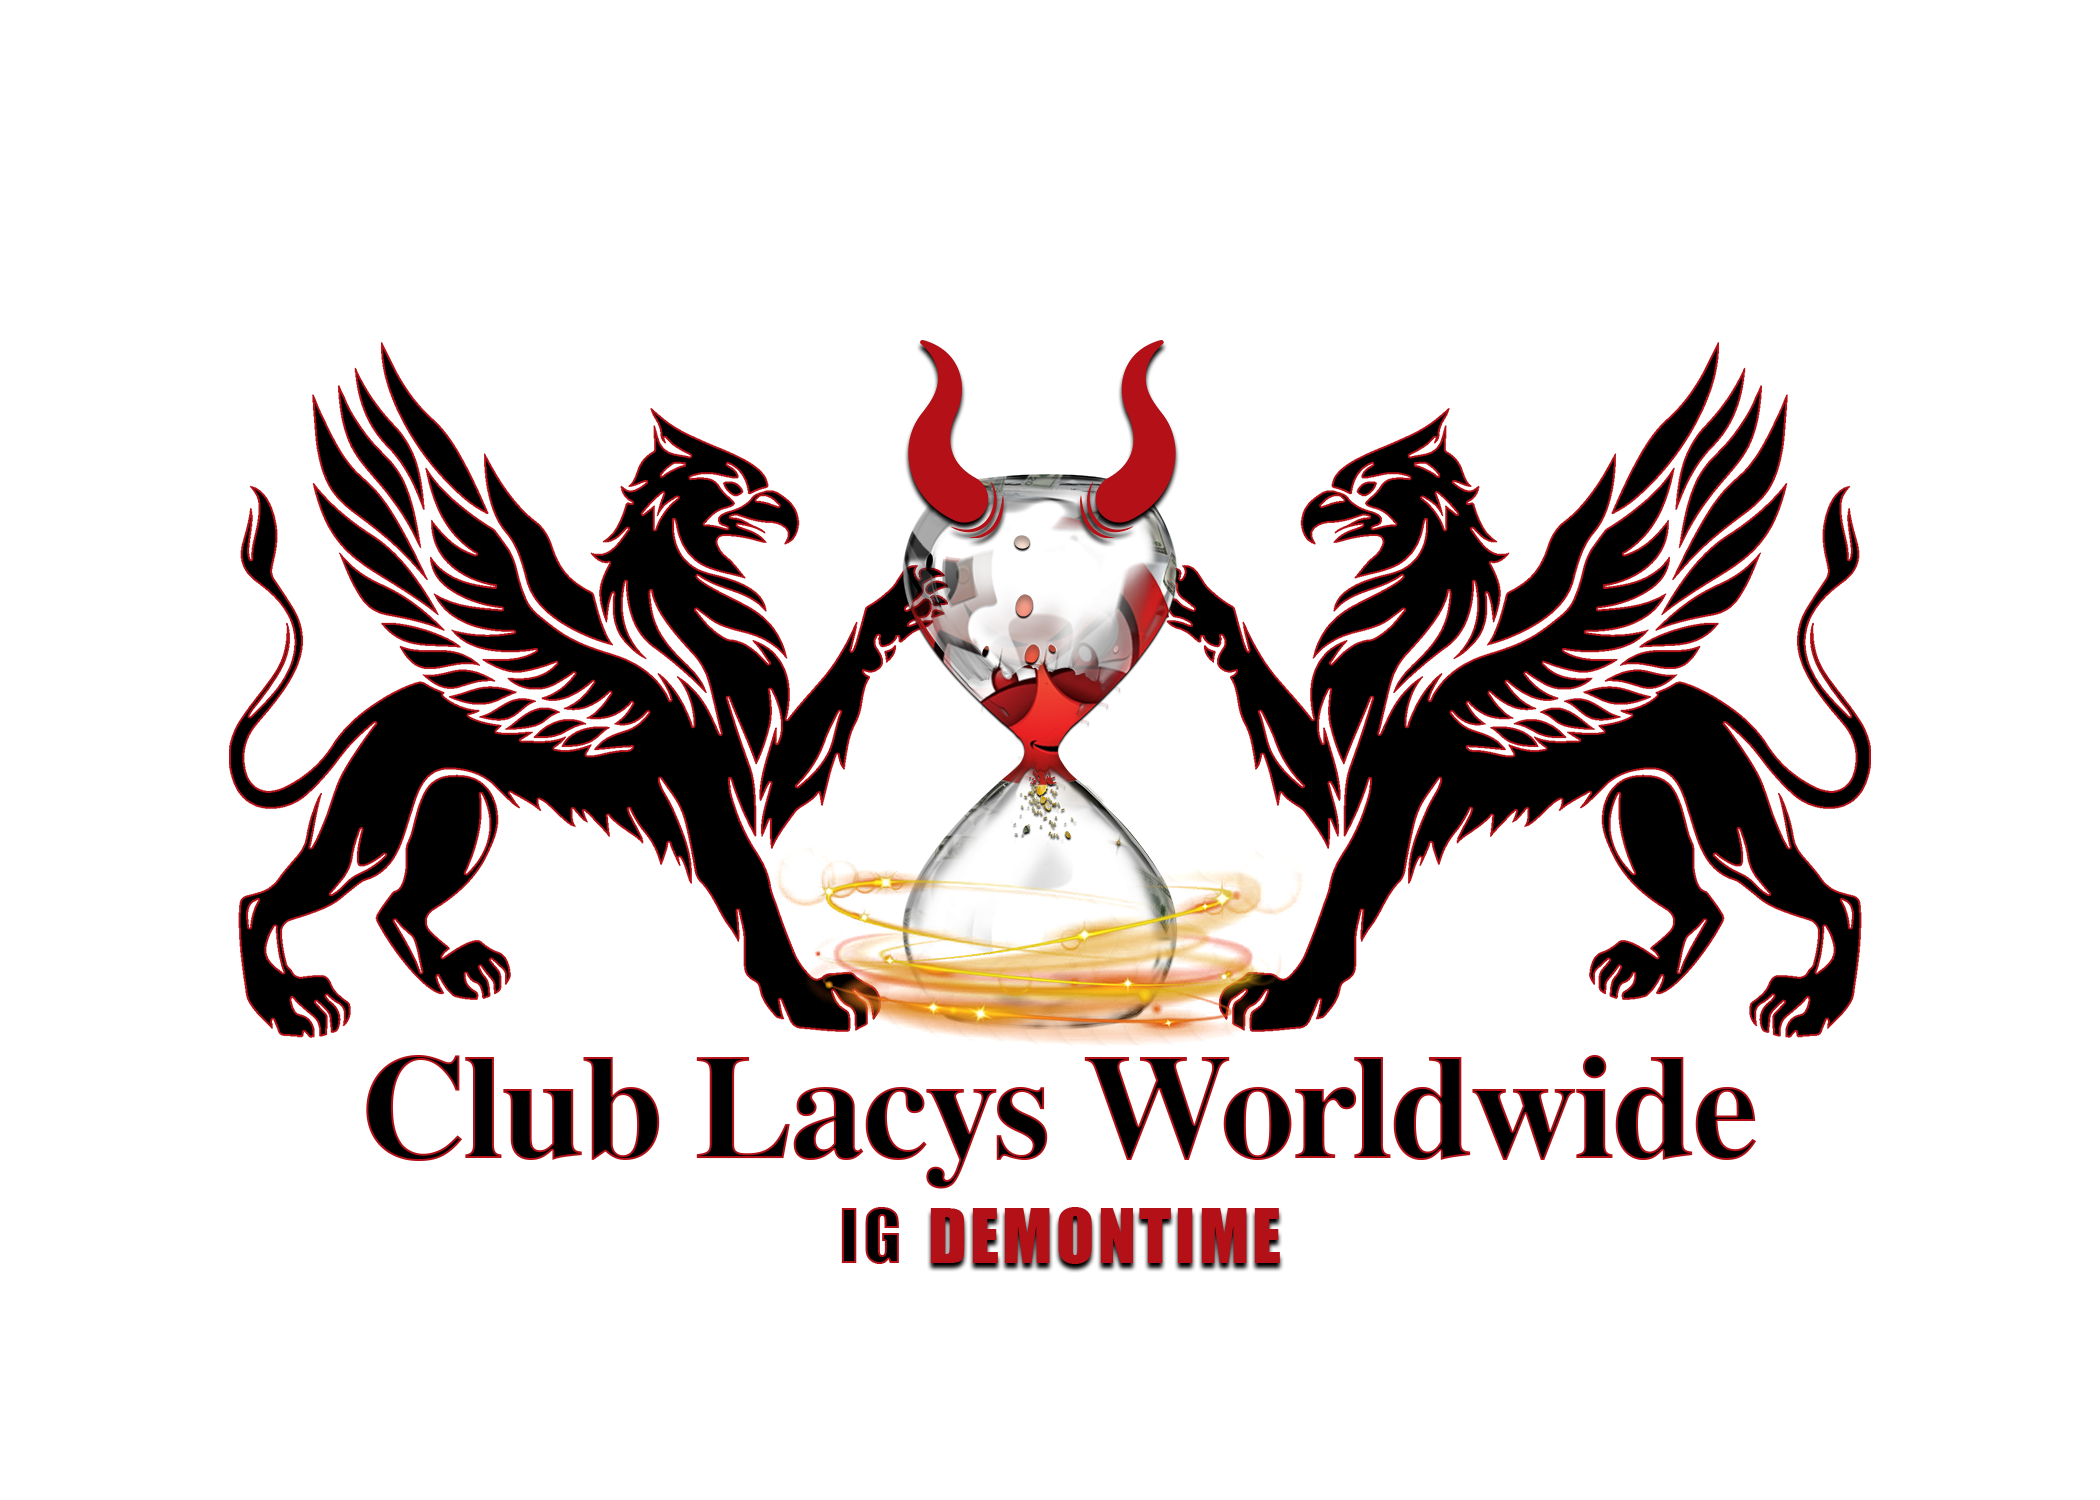 ClubLacysworldwide.com